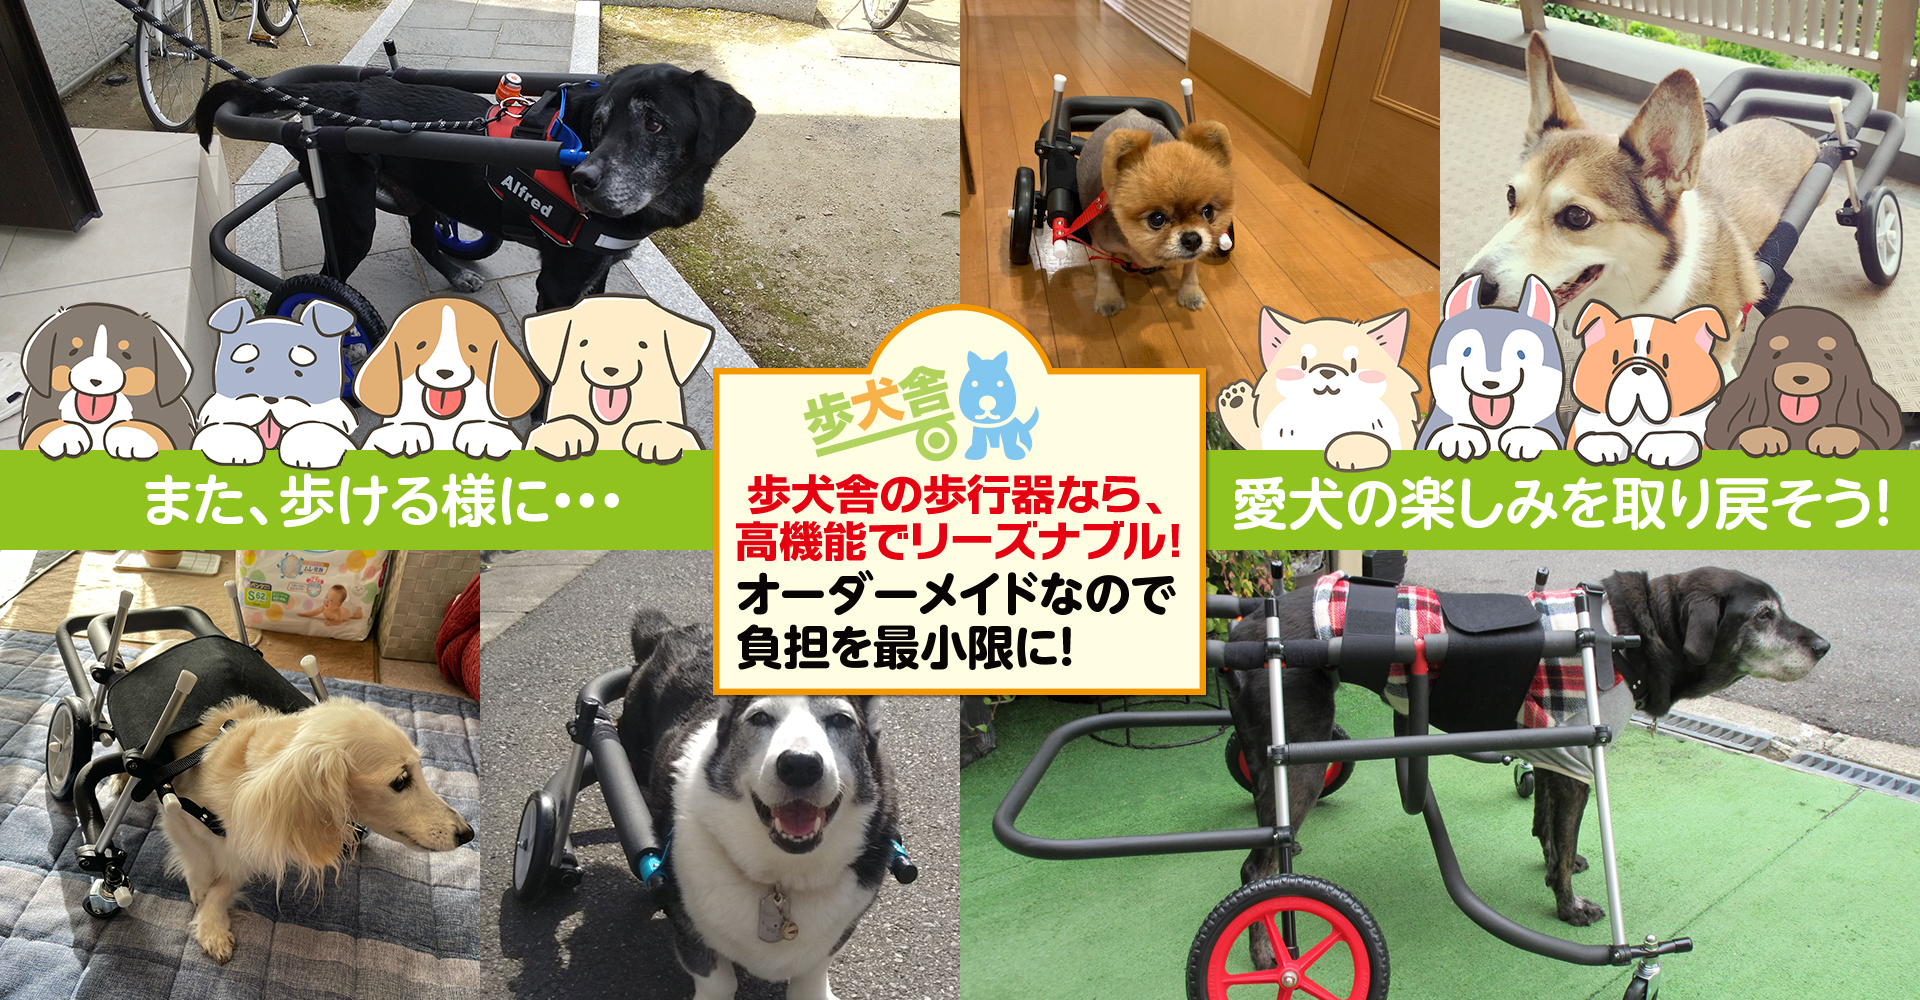 当社の MIX犬4輪歩行器!リハビリ!食事補助!犬の歩行器!介護!犬の車椅子